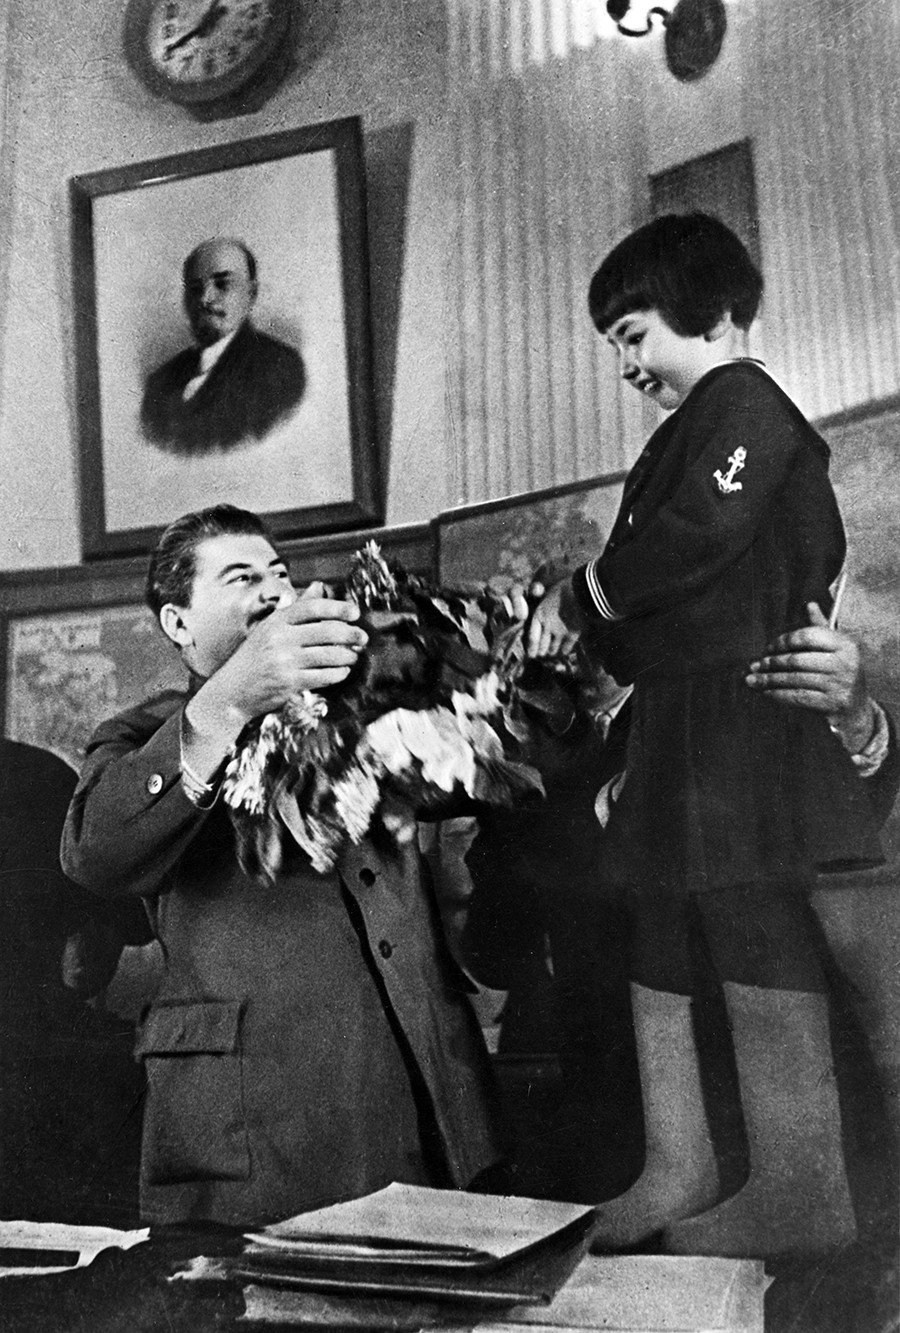 Јосиф Стаљин прима букет цвећа од Енгелсине (Геље) Маркизове.